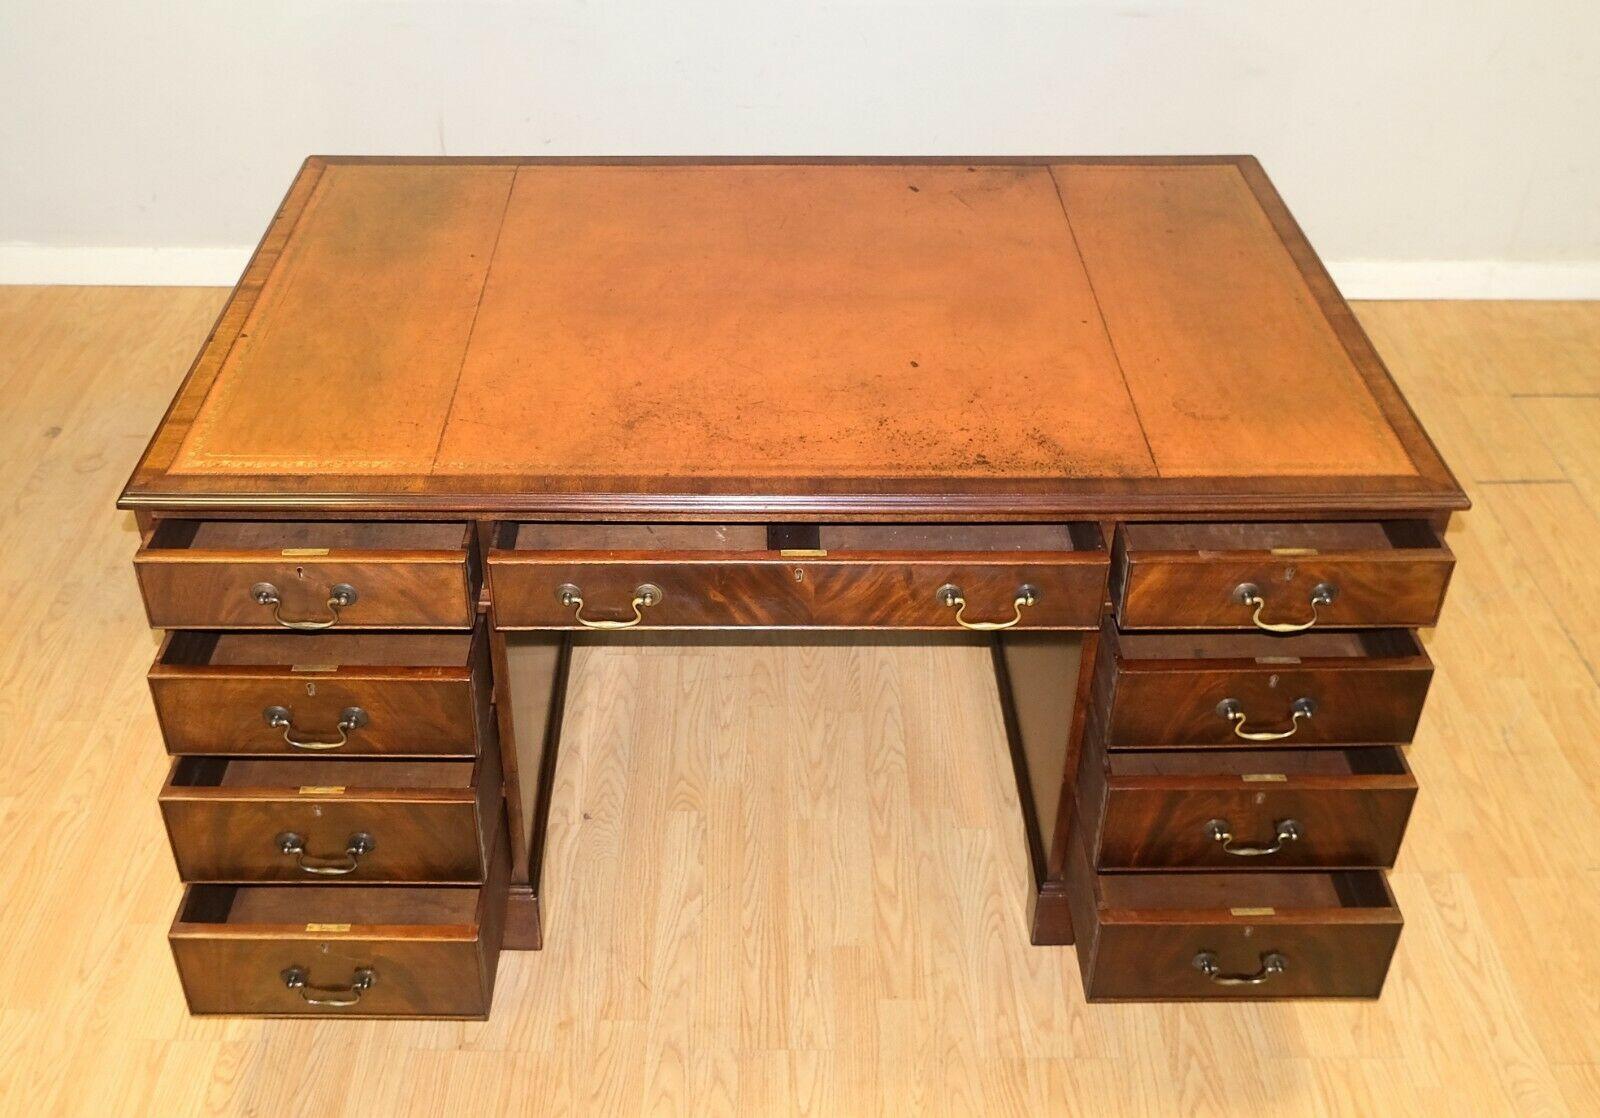 Victorian Lovely Vintage Twin Pedestal Partner Desk Gold Tooled Brown Leather Top & Keys